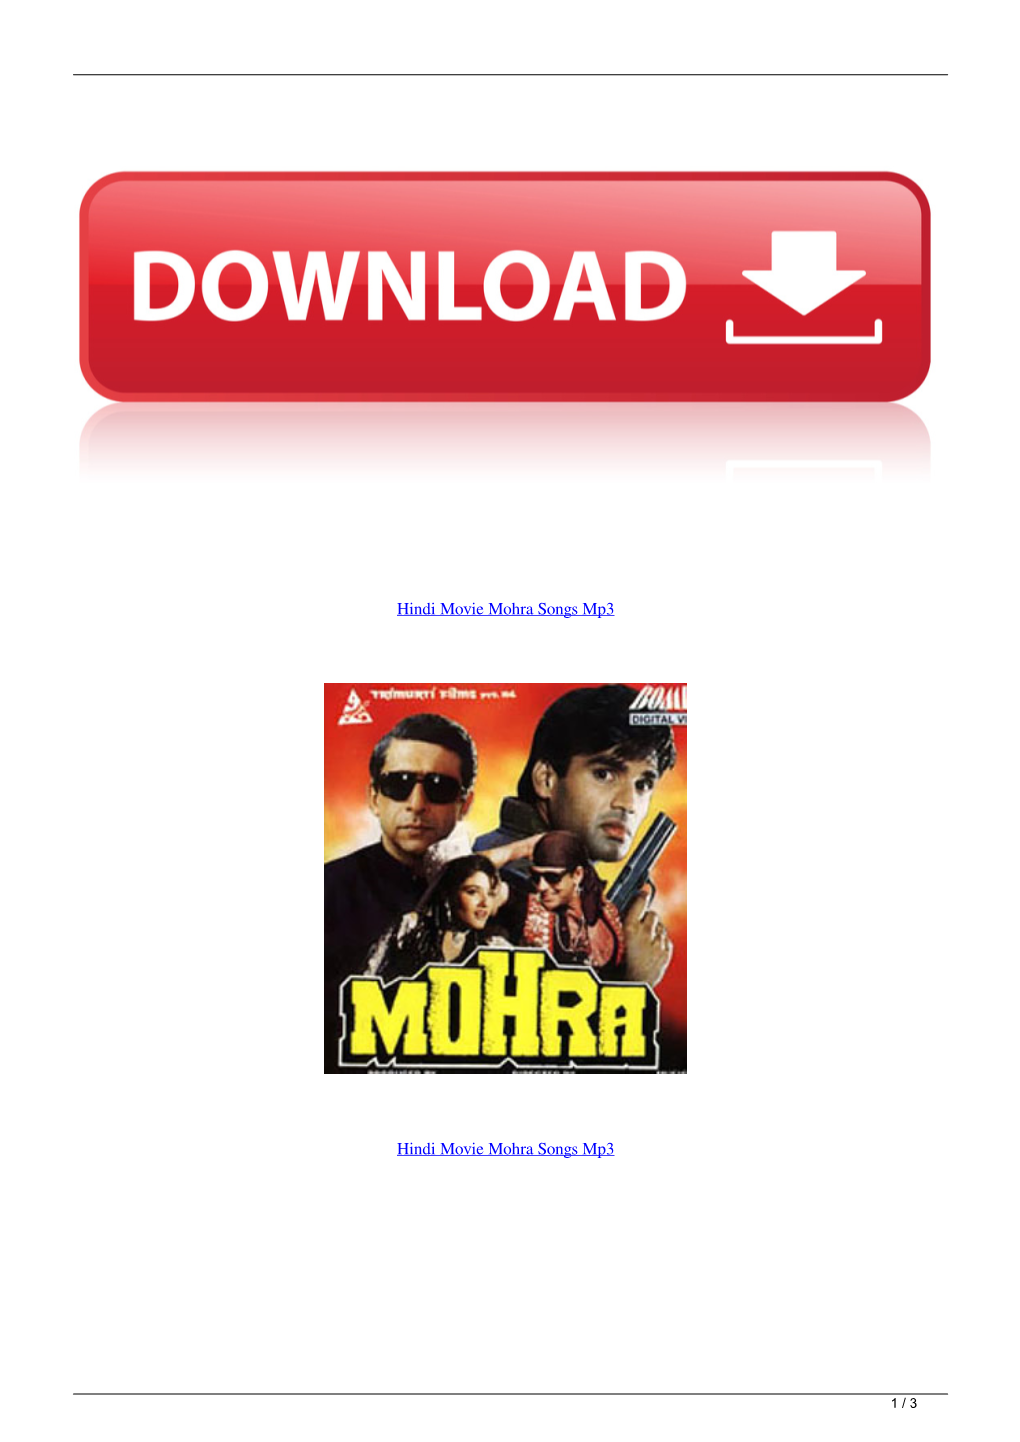 Hindi Movie Mohra Songs Mp3